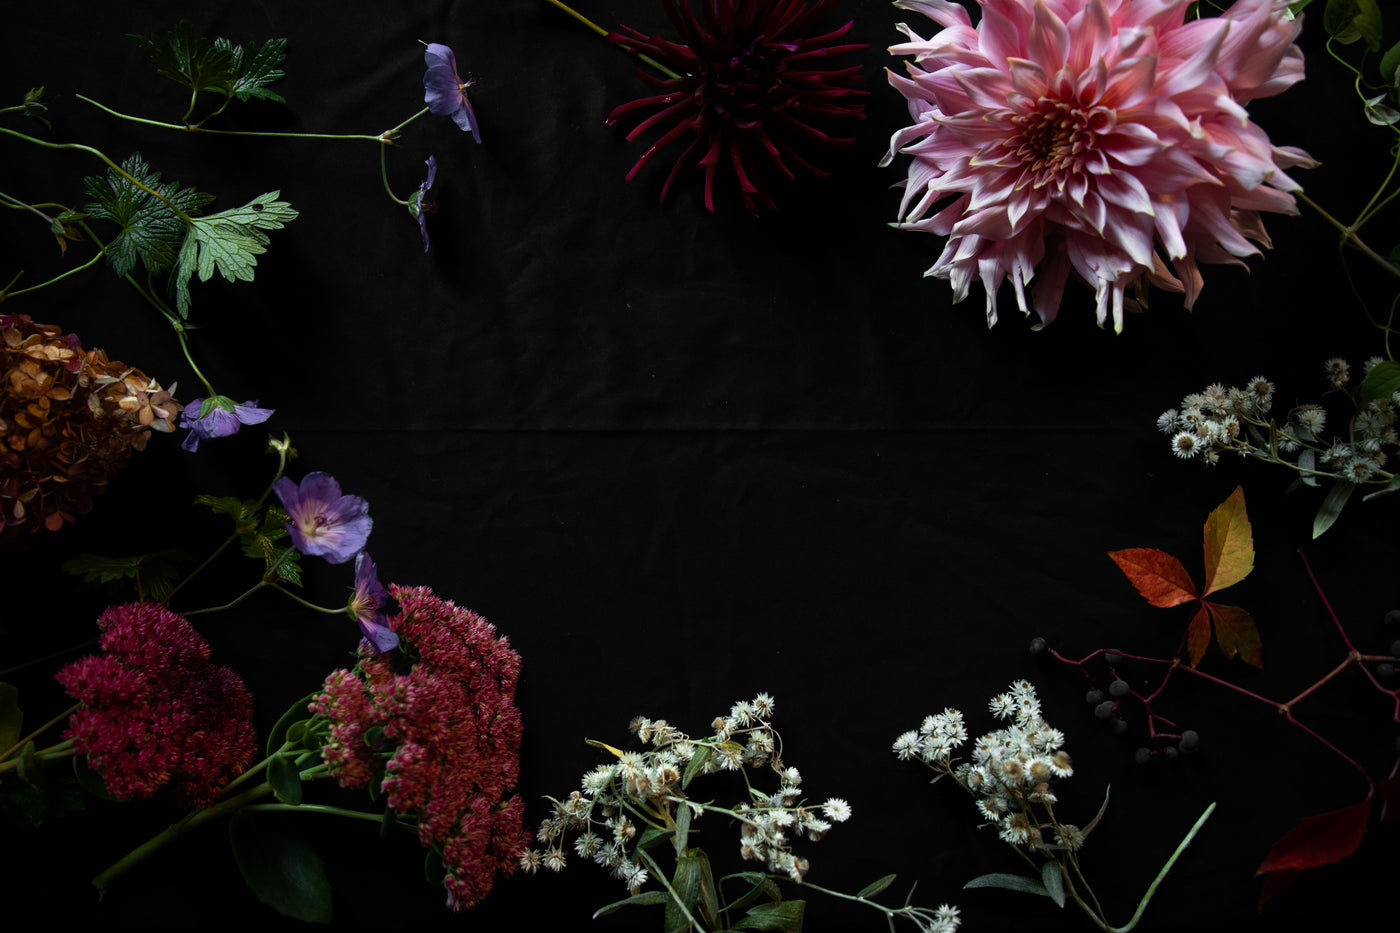 Säsongens sista blomsterbuketter från trädgården: Dahlia, kärleksört och hortensia